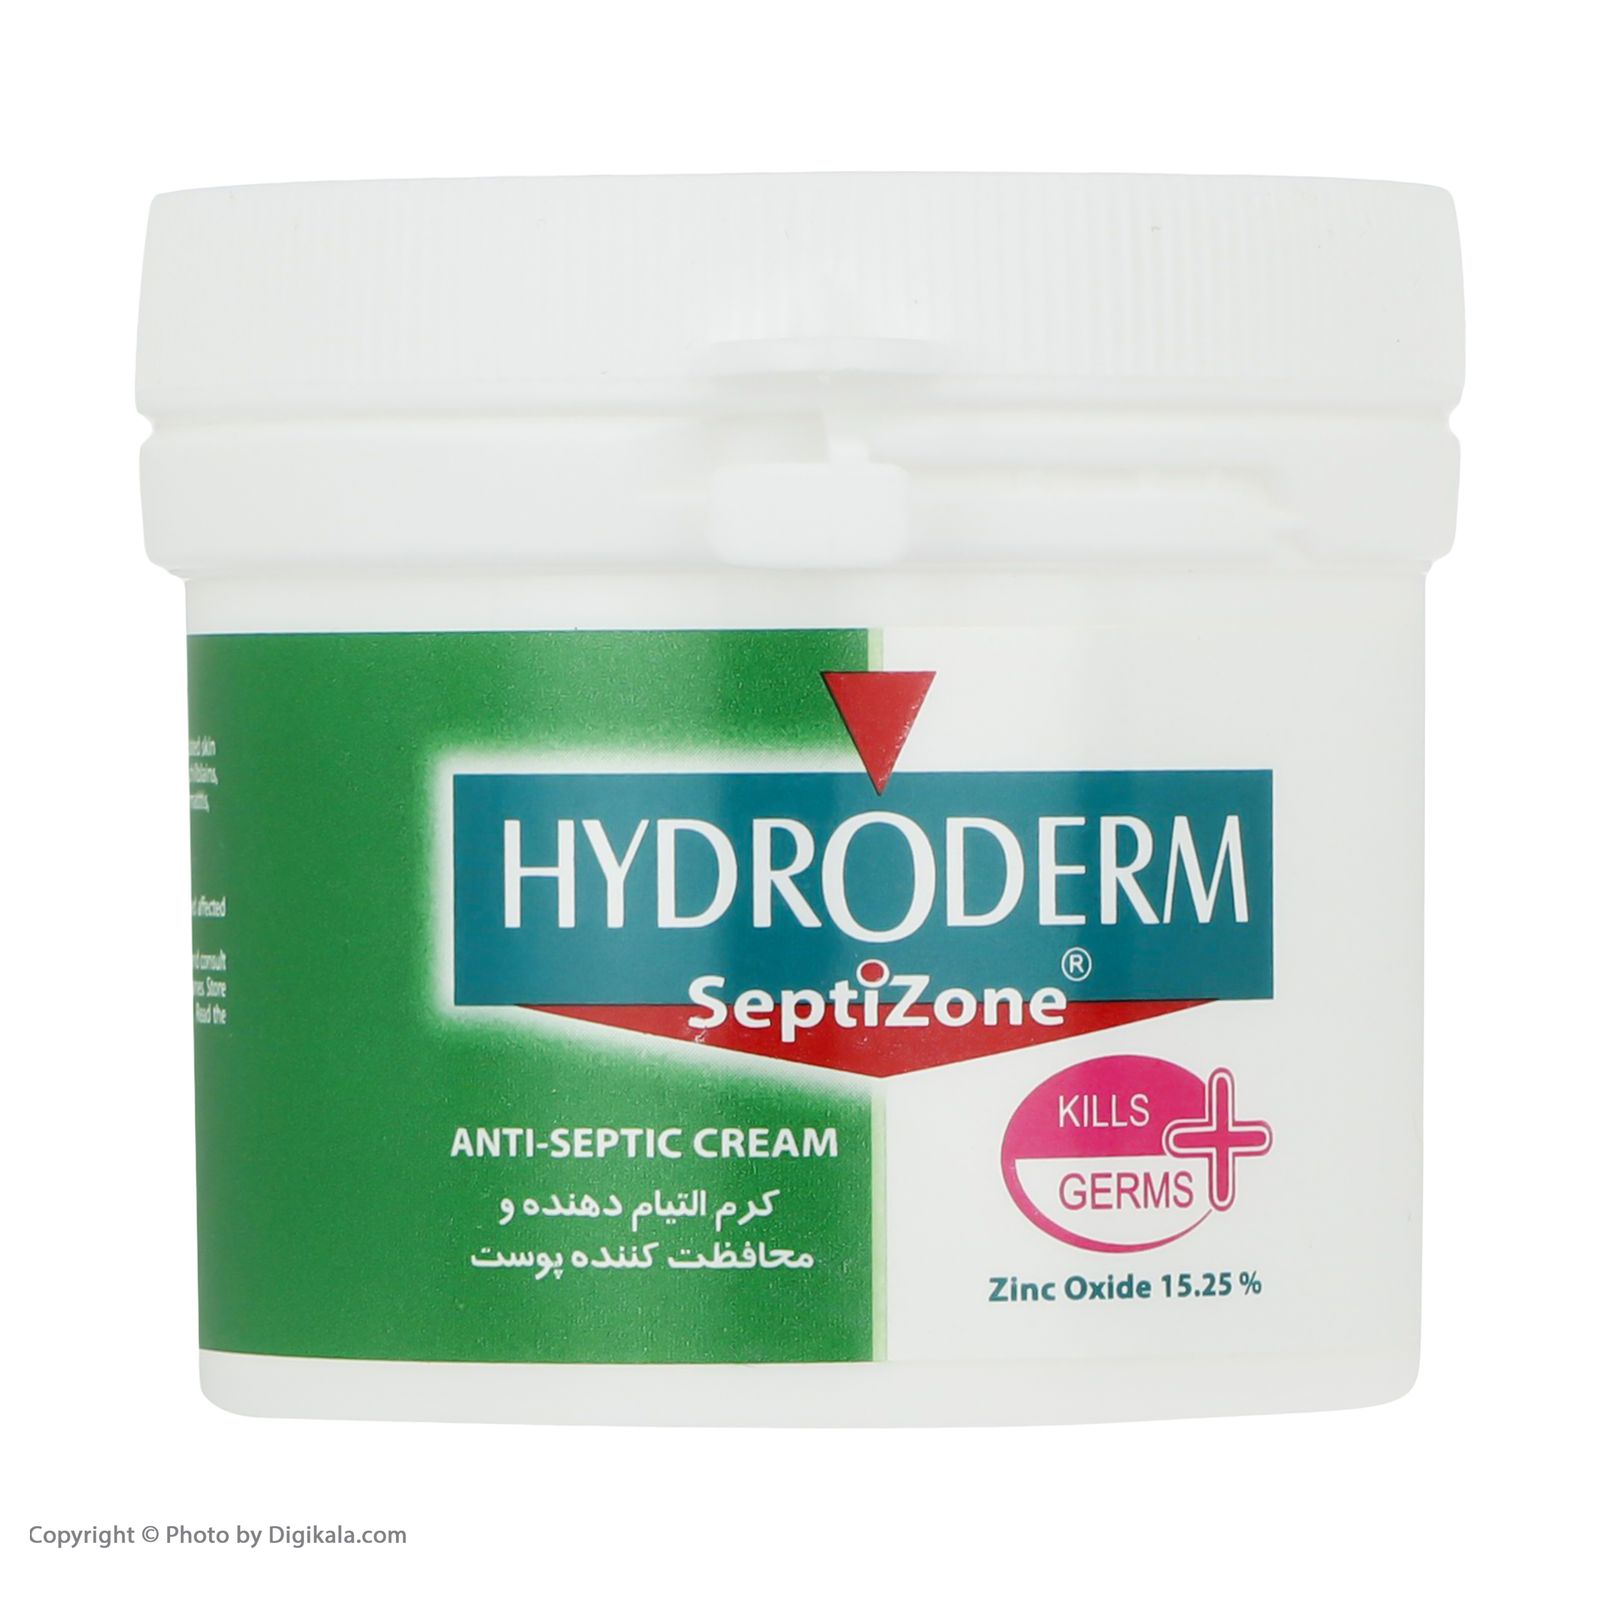 کرم التیام دهنده و محافظت کننده پوست هیدرودرم مدل Septizone حجم 150 میلی لیتر  -  - 2